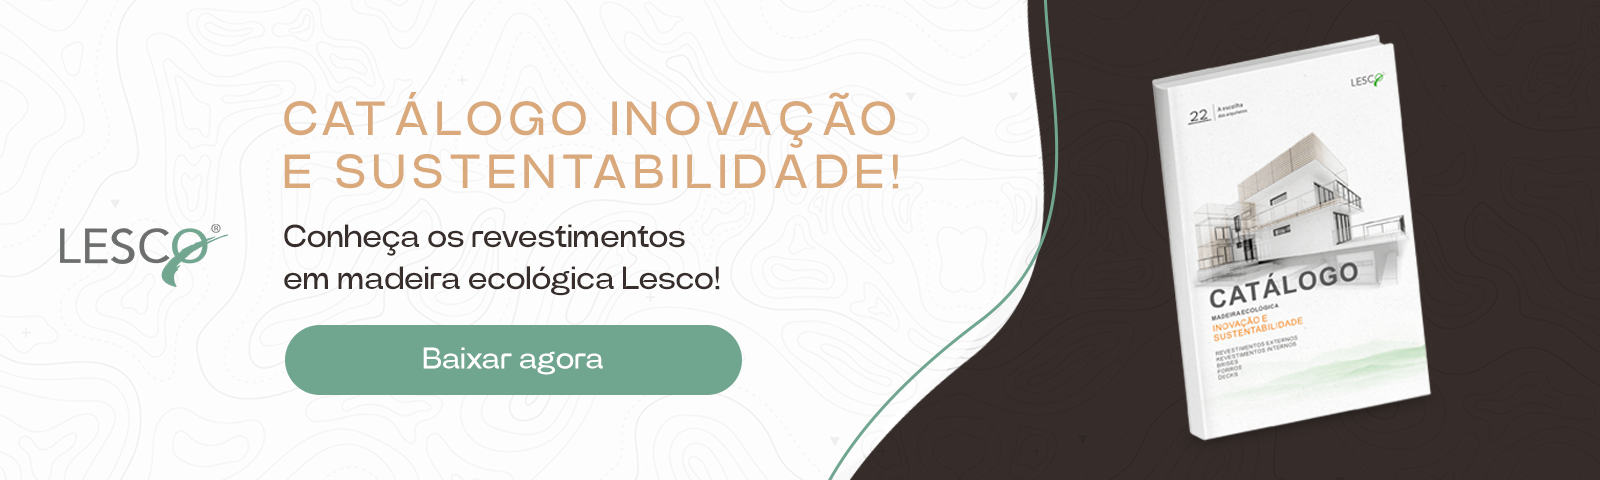 Inovação e sustentabilidade: conheça os revestimentos de madeira ecológica da Lesco!